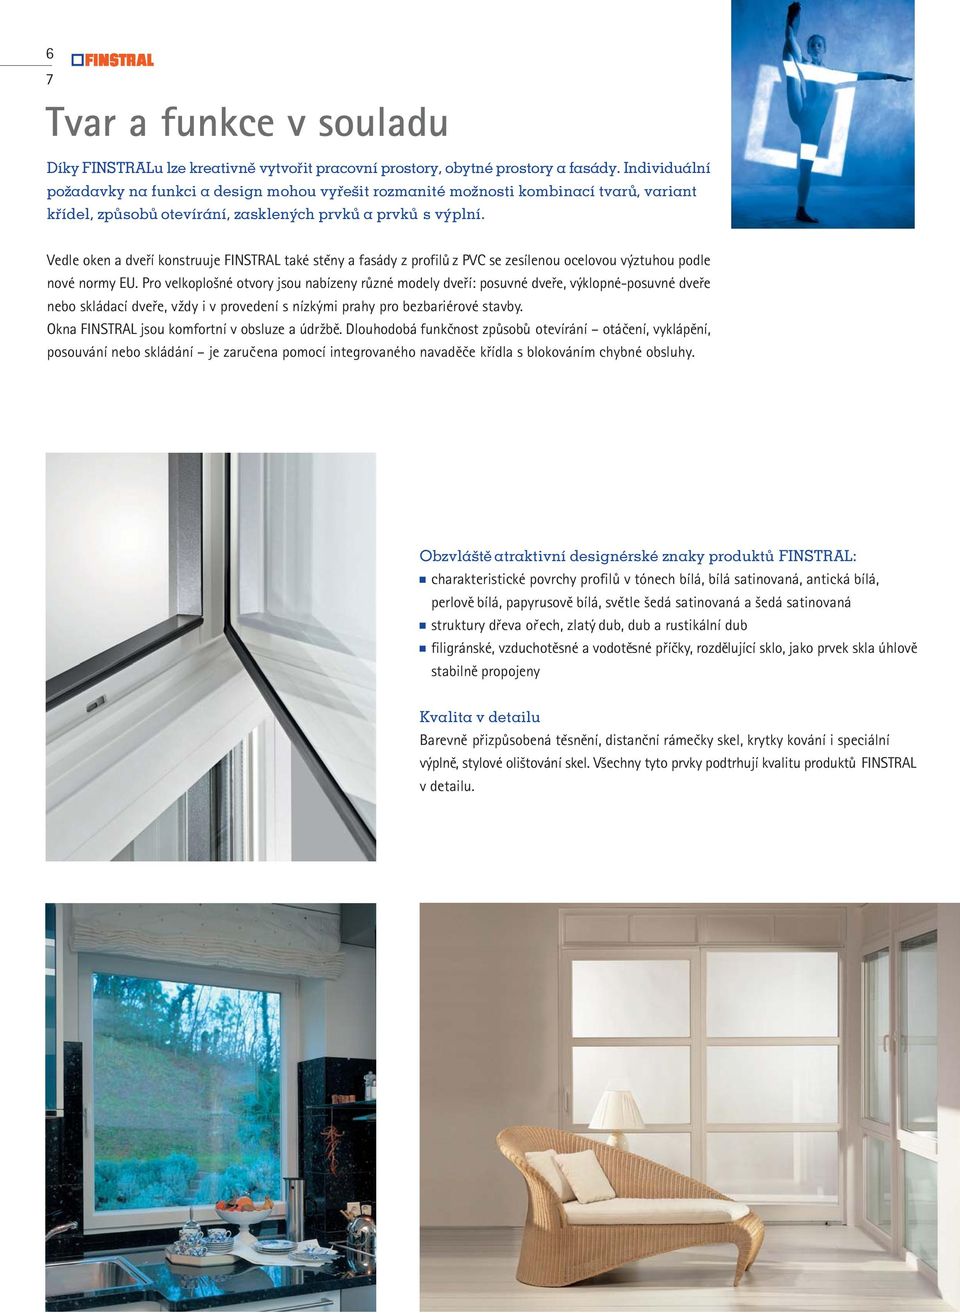 Vedle oken a dveří konstruuje FINSTRAL také stěny a fasády z profilů z PVC se zesílenou ocelovou výztuhou podle nové normy EU.